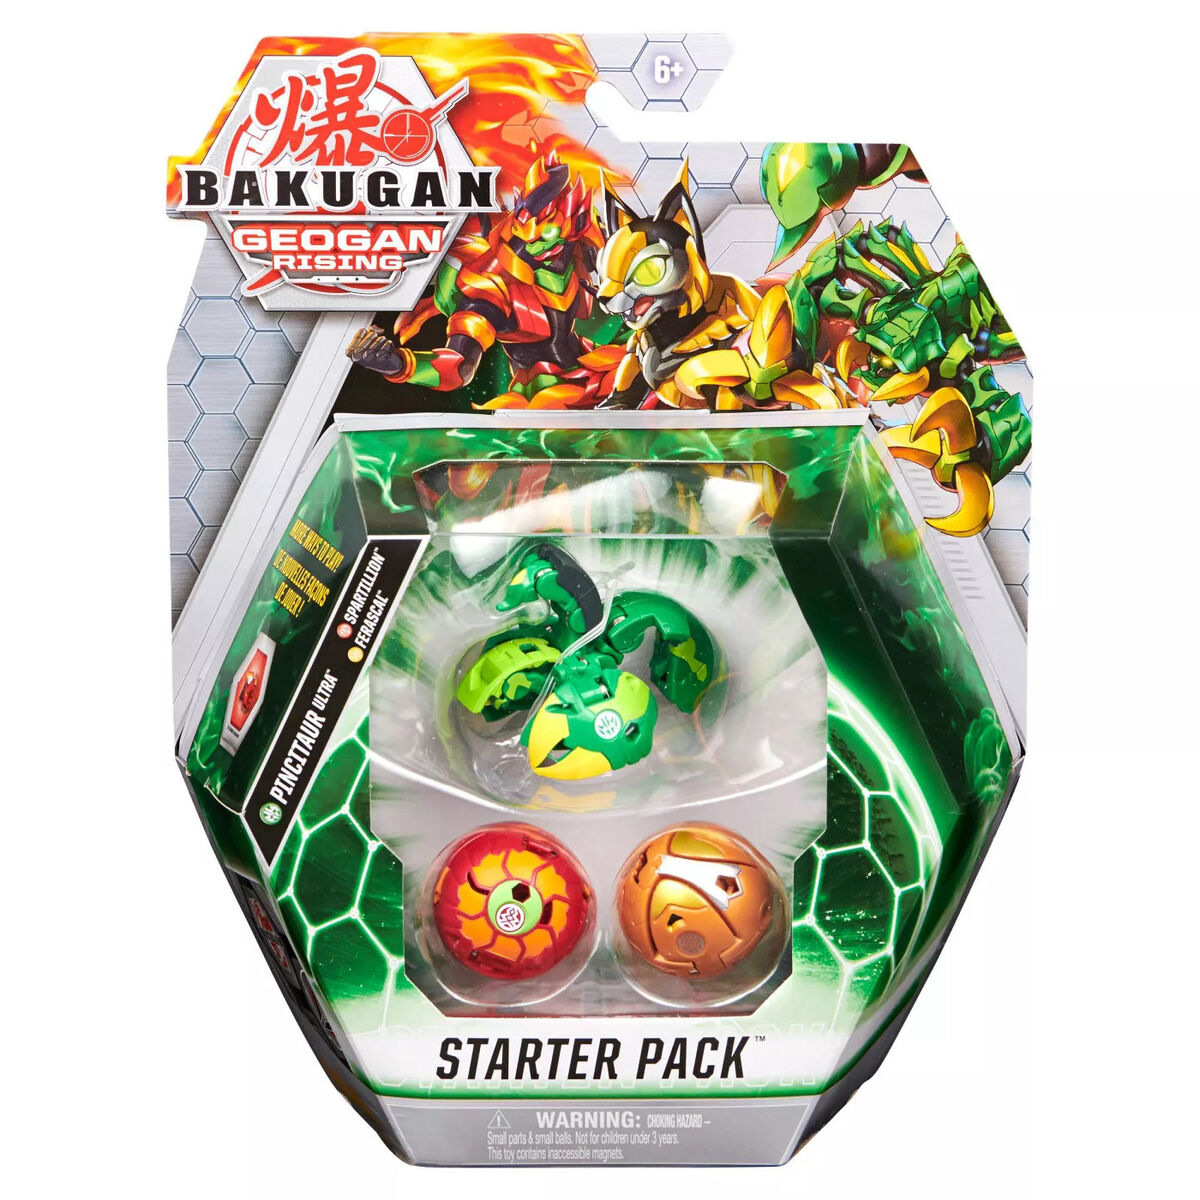 Bakugan Geogan Rising Starter Pack